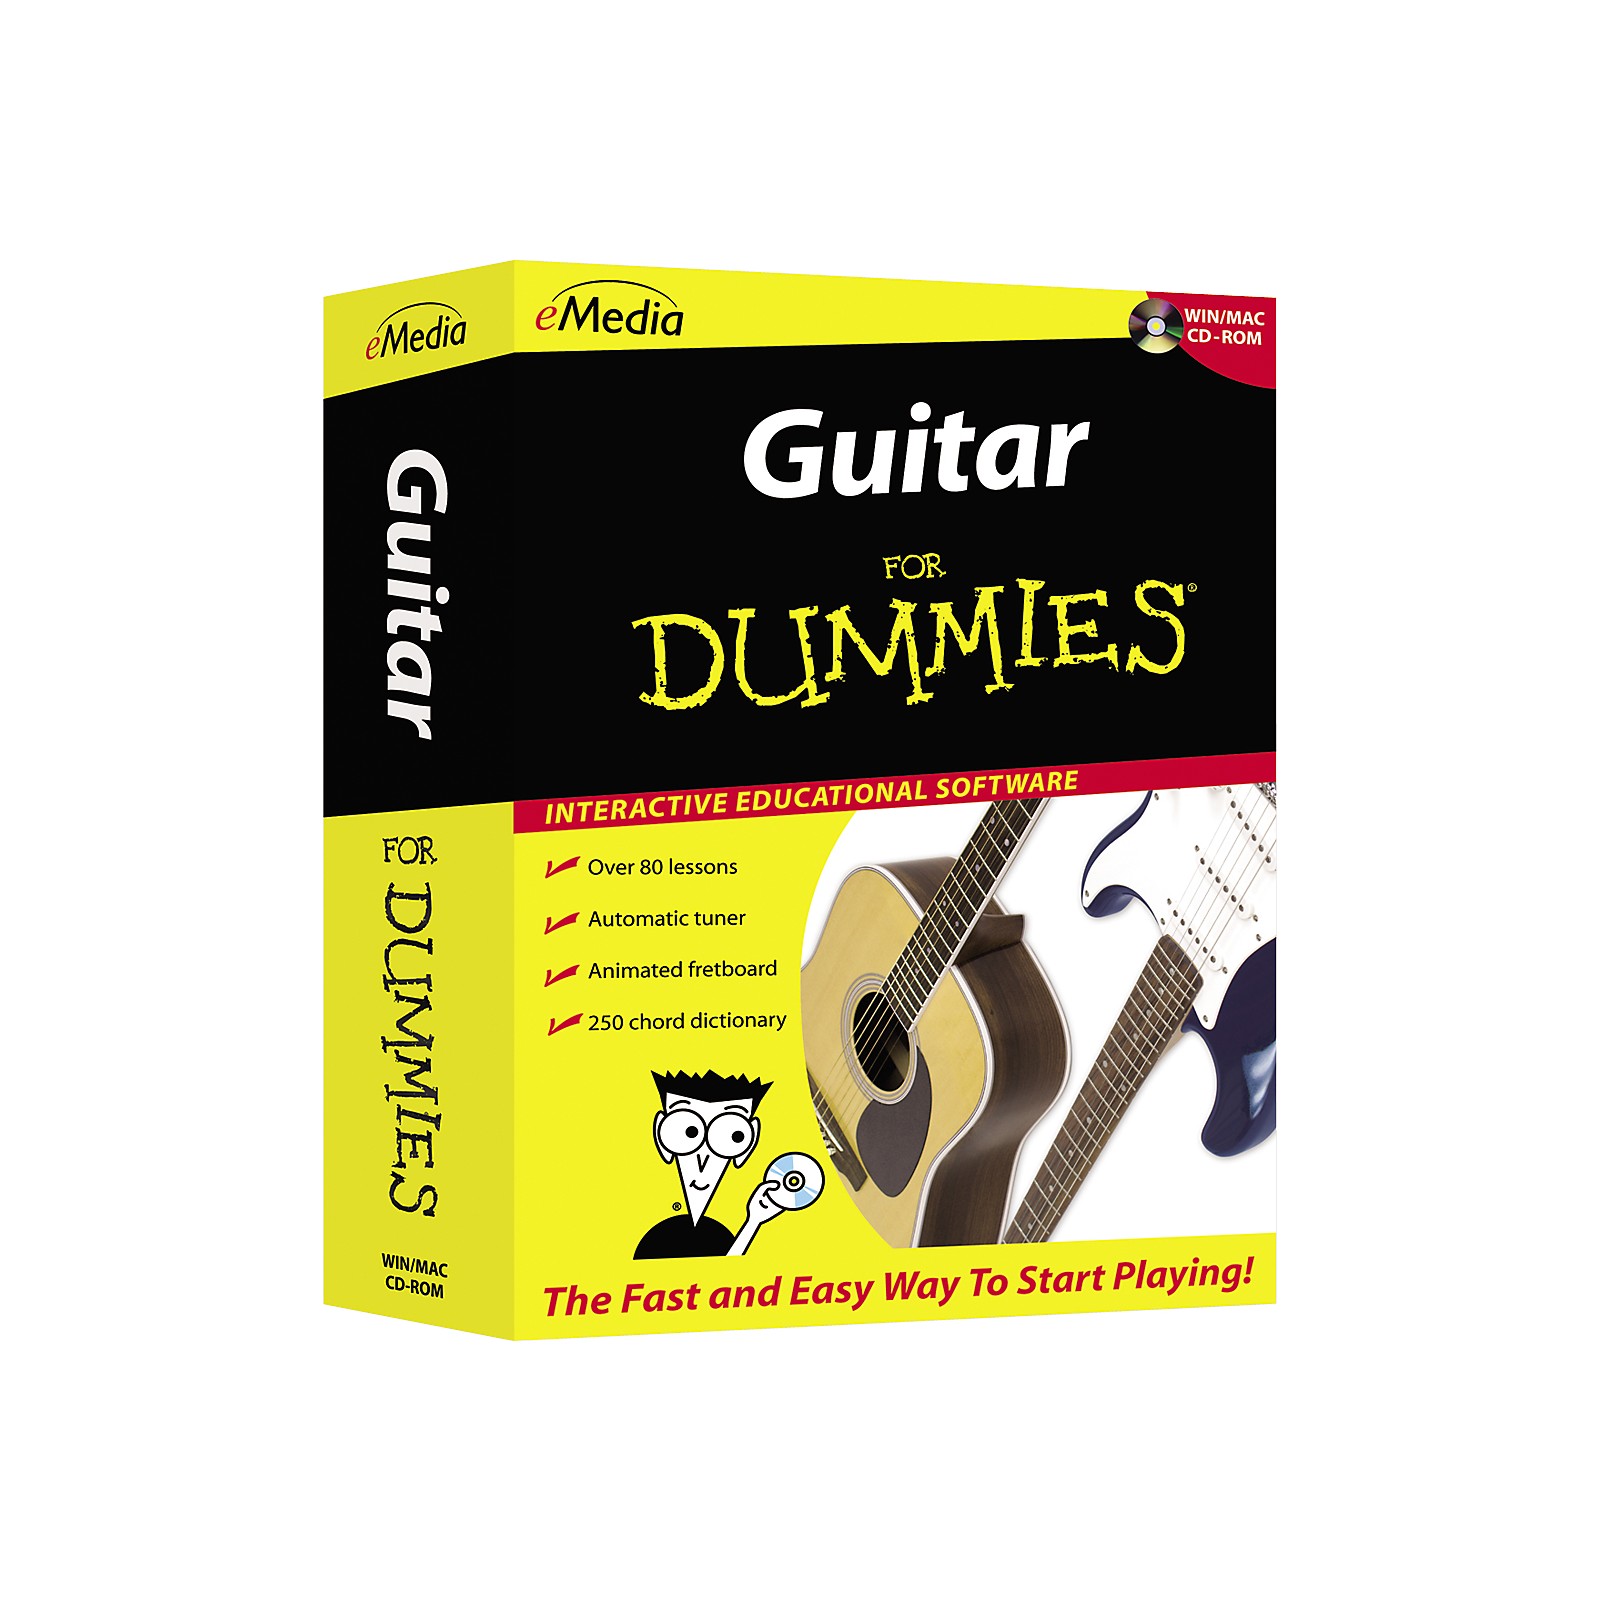 Guitar for dummies videos